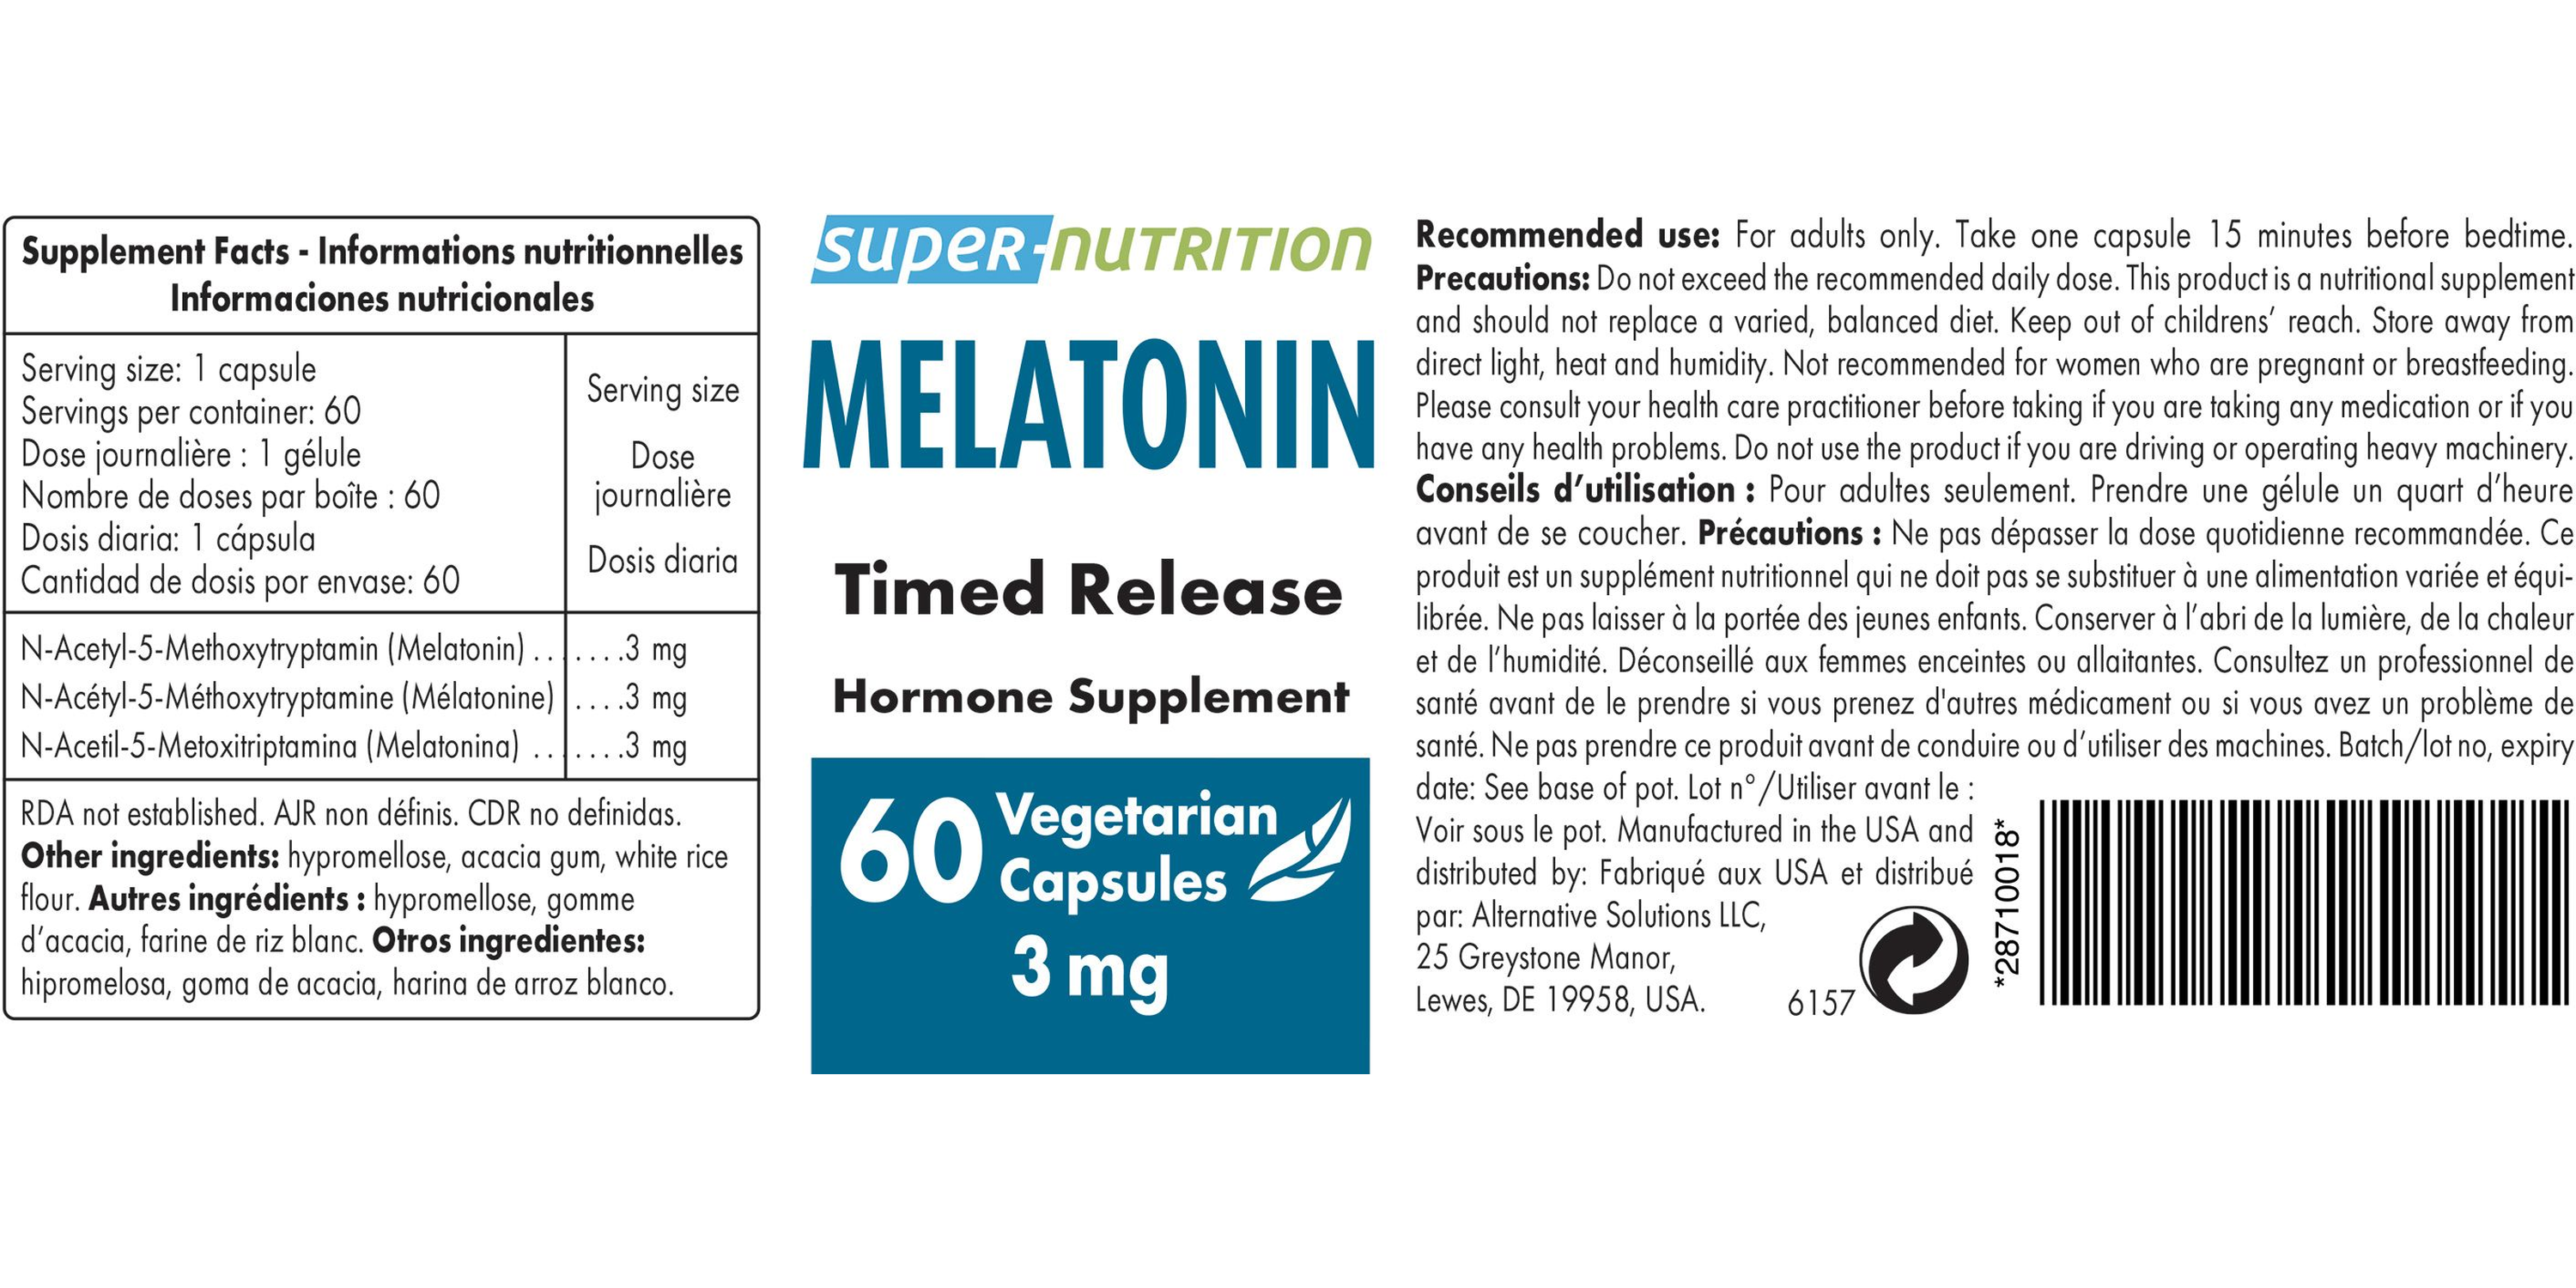 Melatonin 3 mg Timed Release